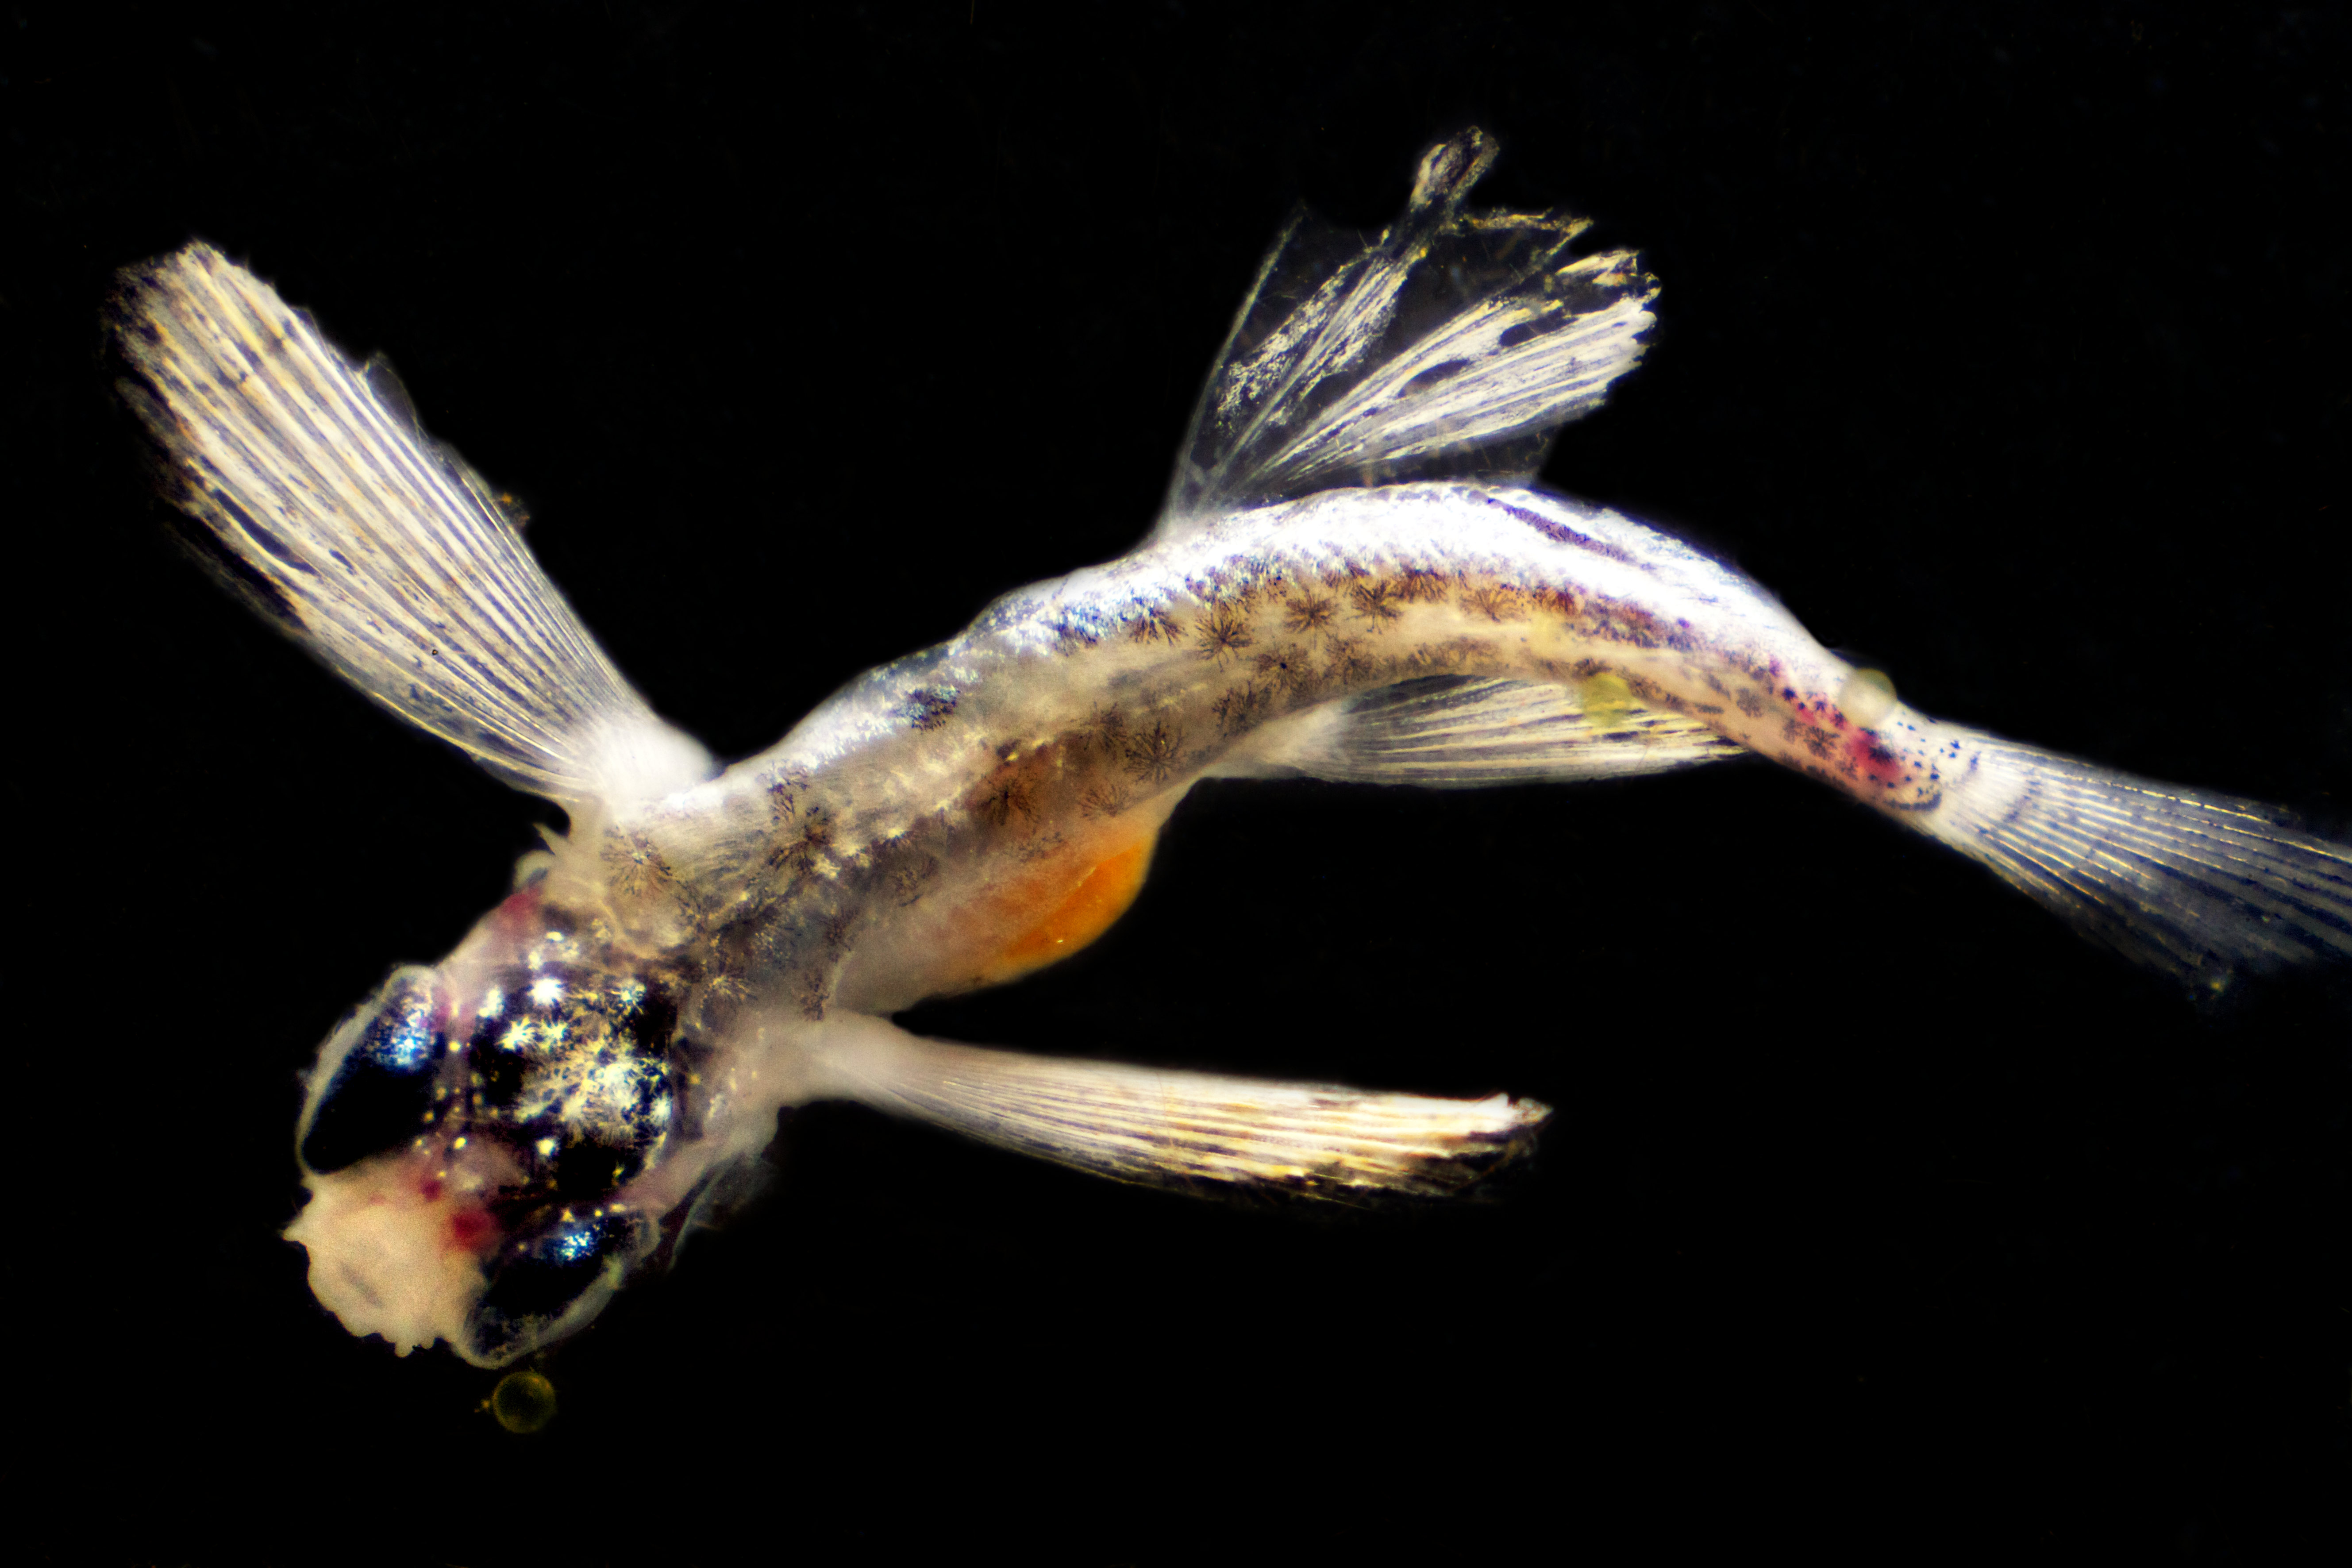 Uno de los peces mesopelágicos observados por la expedición Malaspina. Fuente: CSIC.